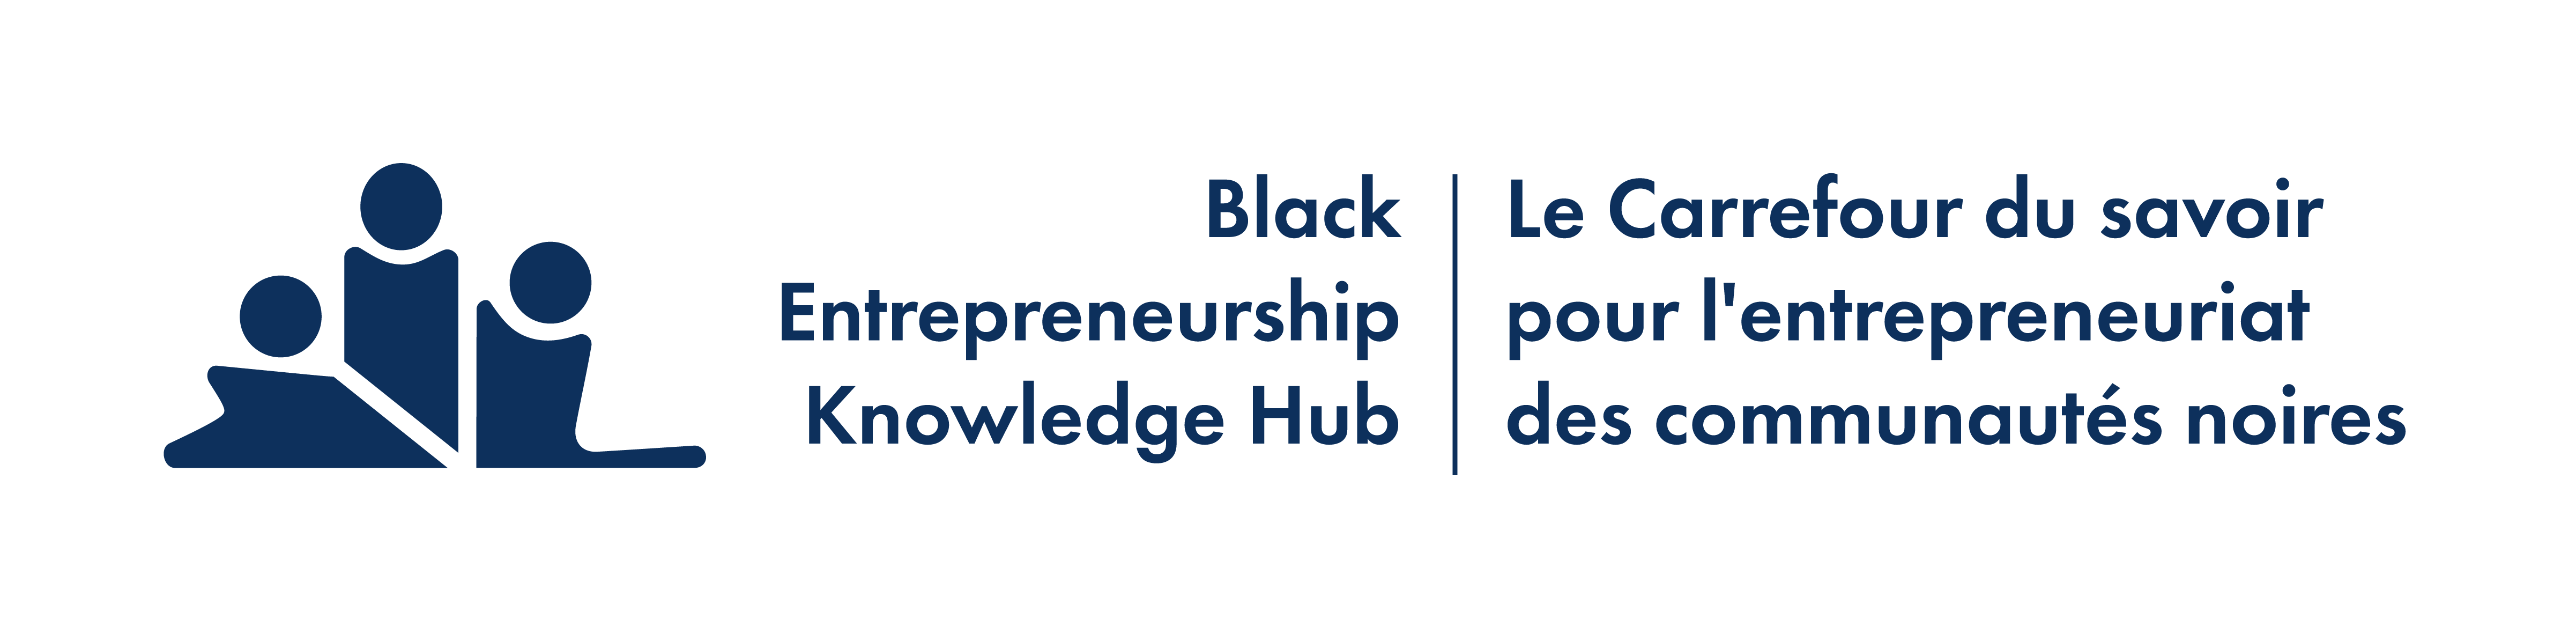 Black Entrepreneurship Knowledge Hub | Le Carrefour du savoir pour l'entrepreneuriat des communautés noires